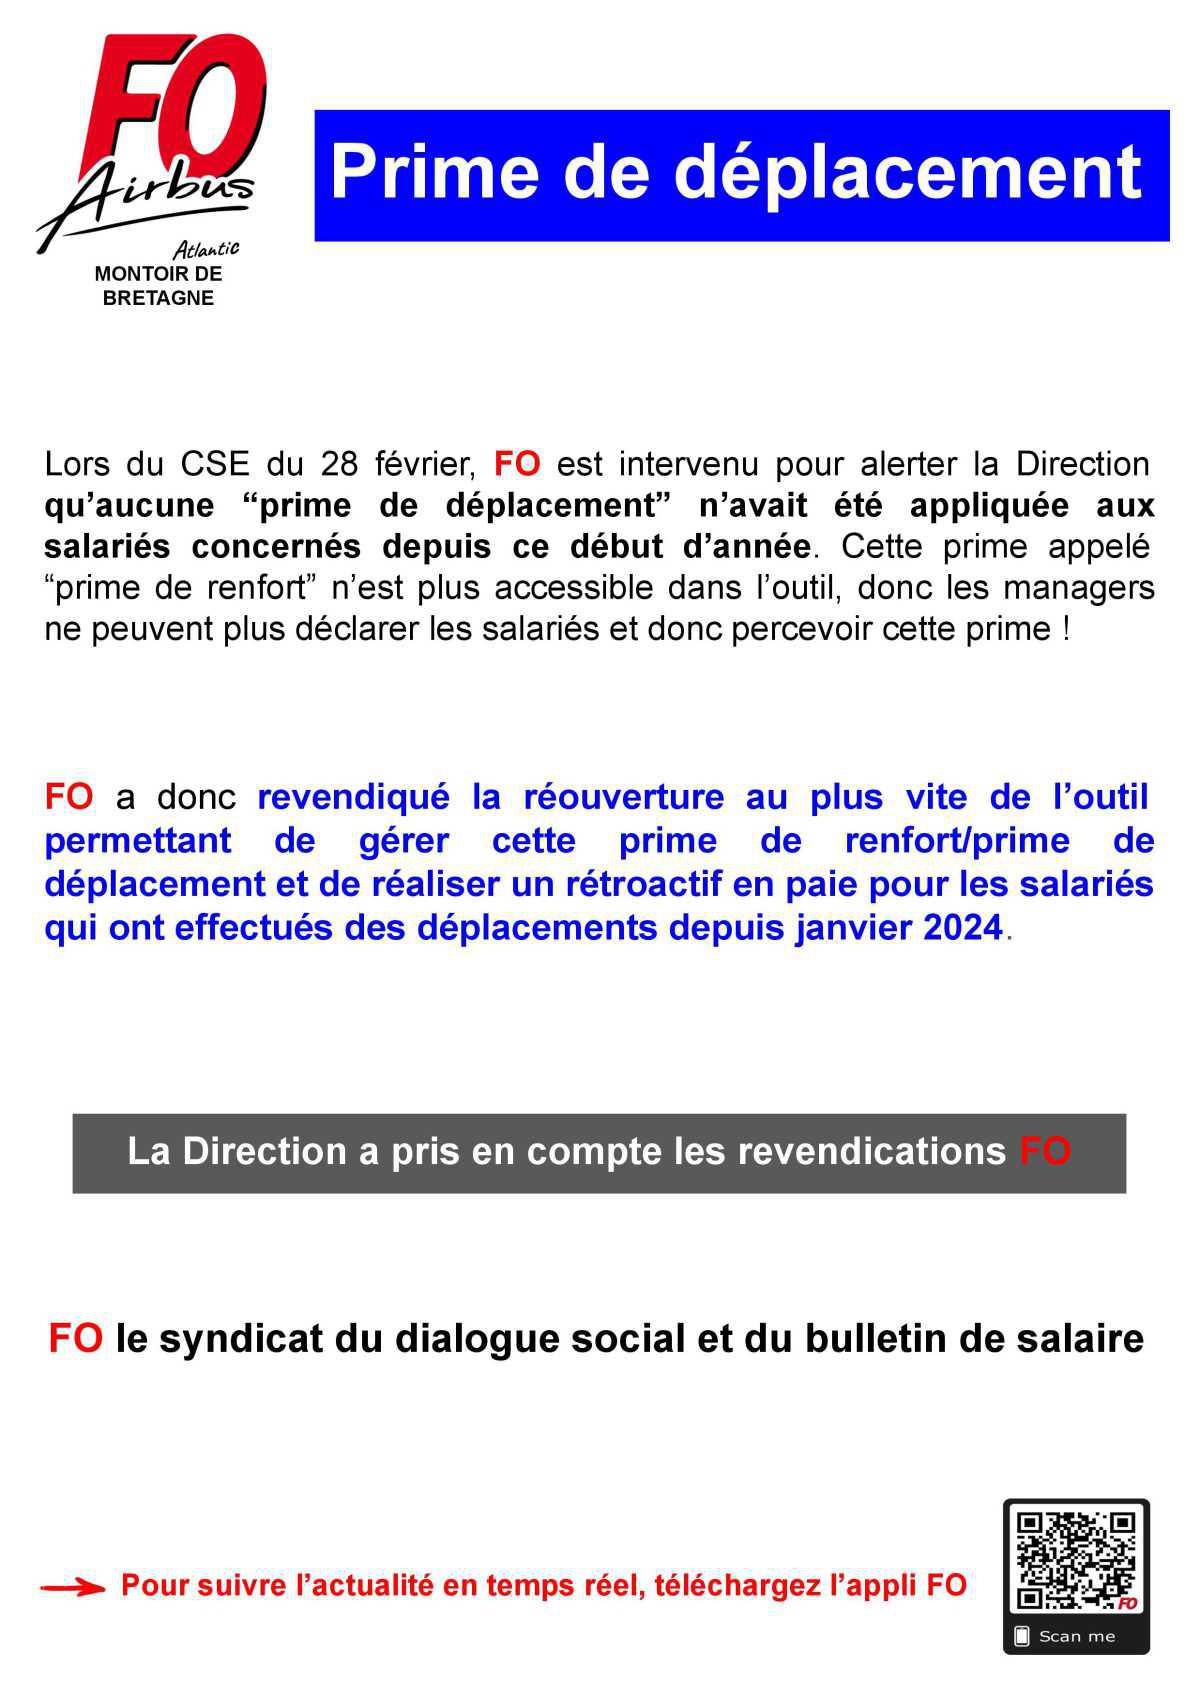 Prime de renfort / déplacements : Intervention FO en CSE du 29/02/24